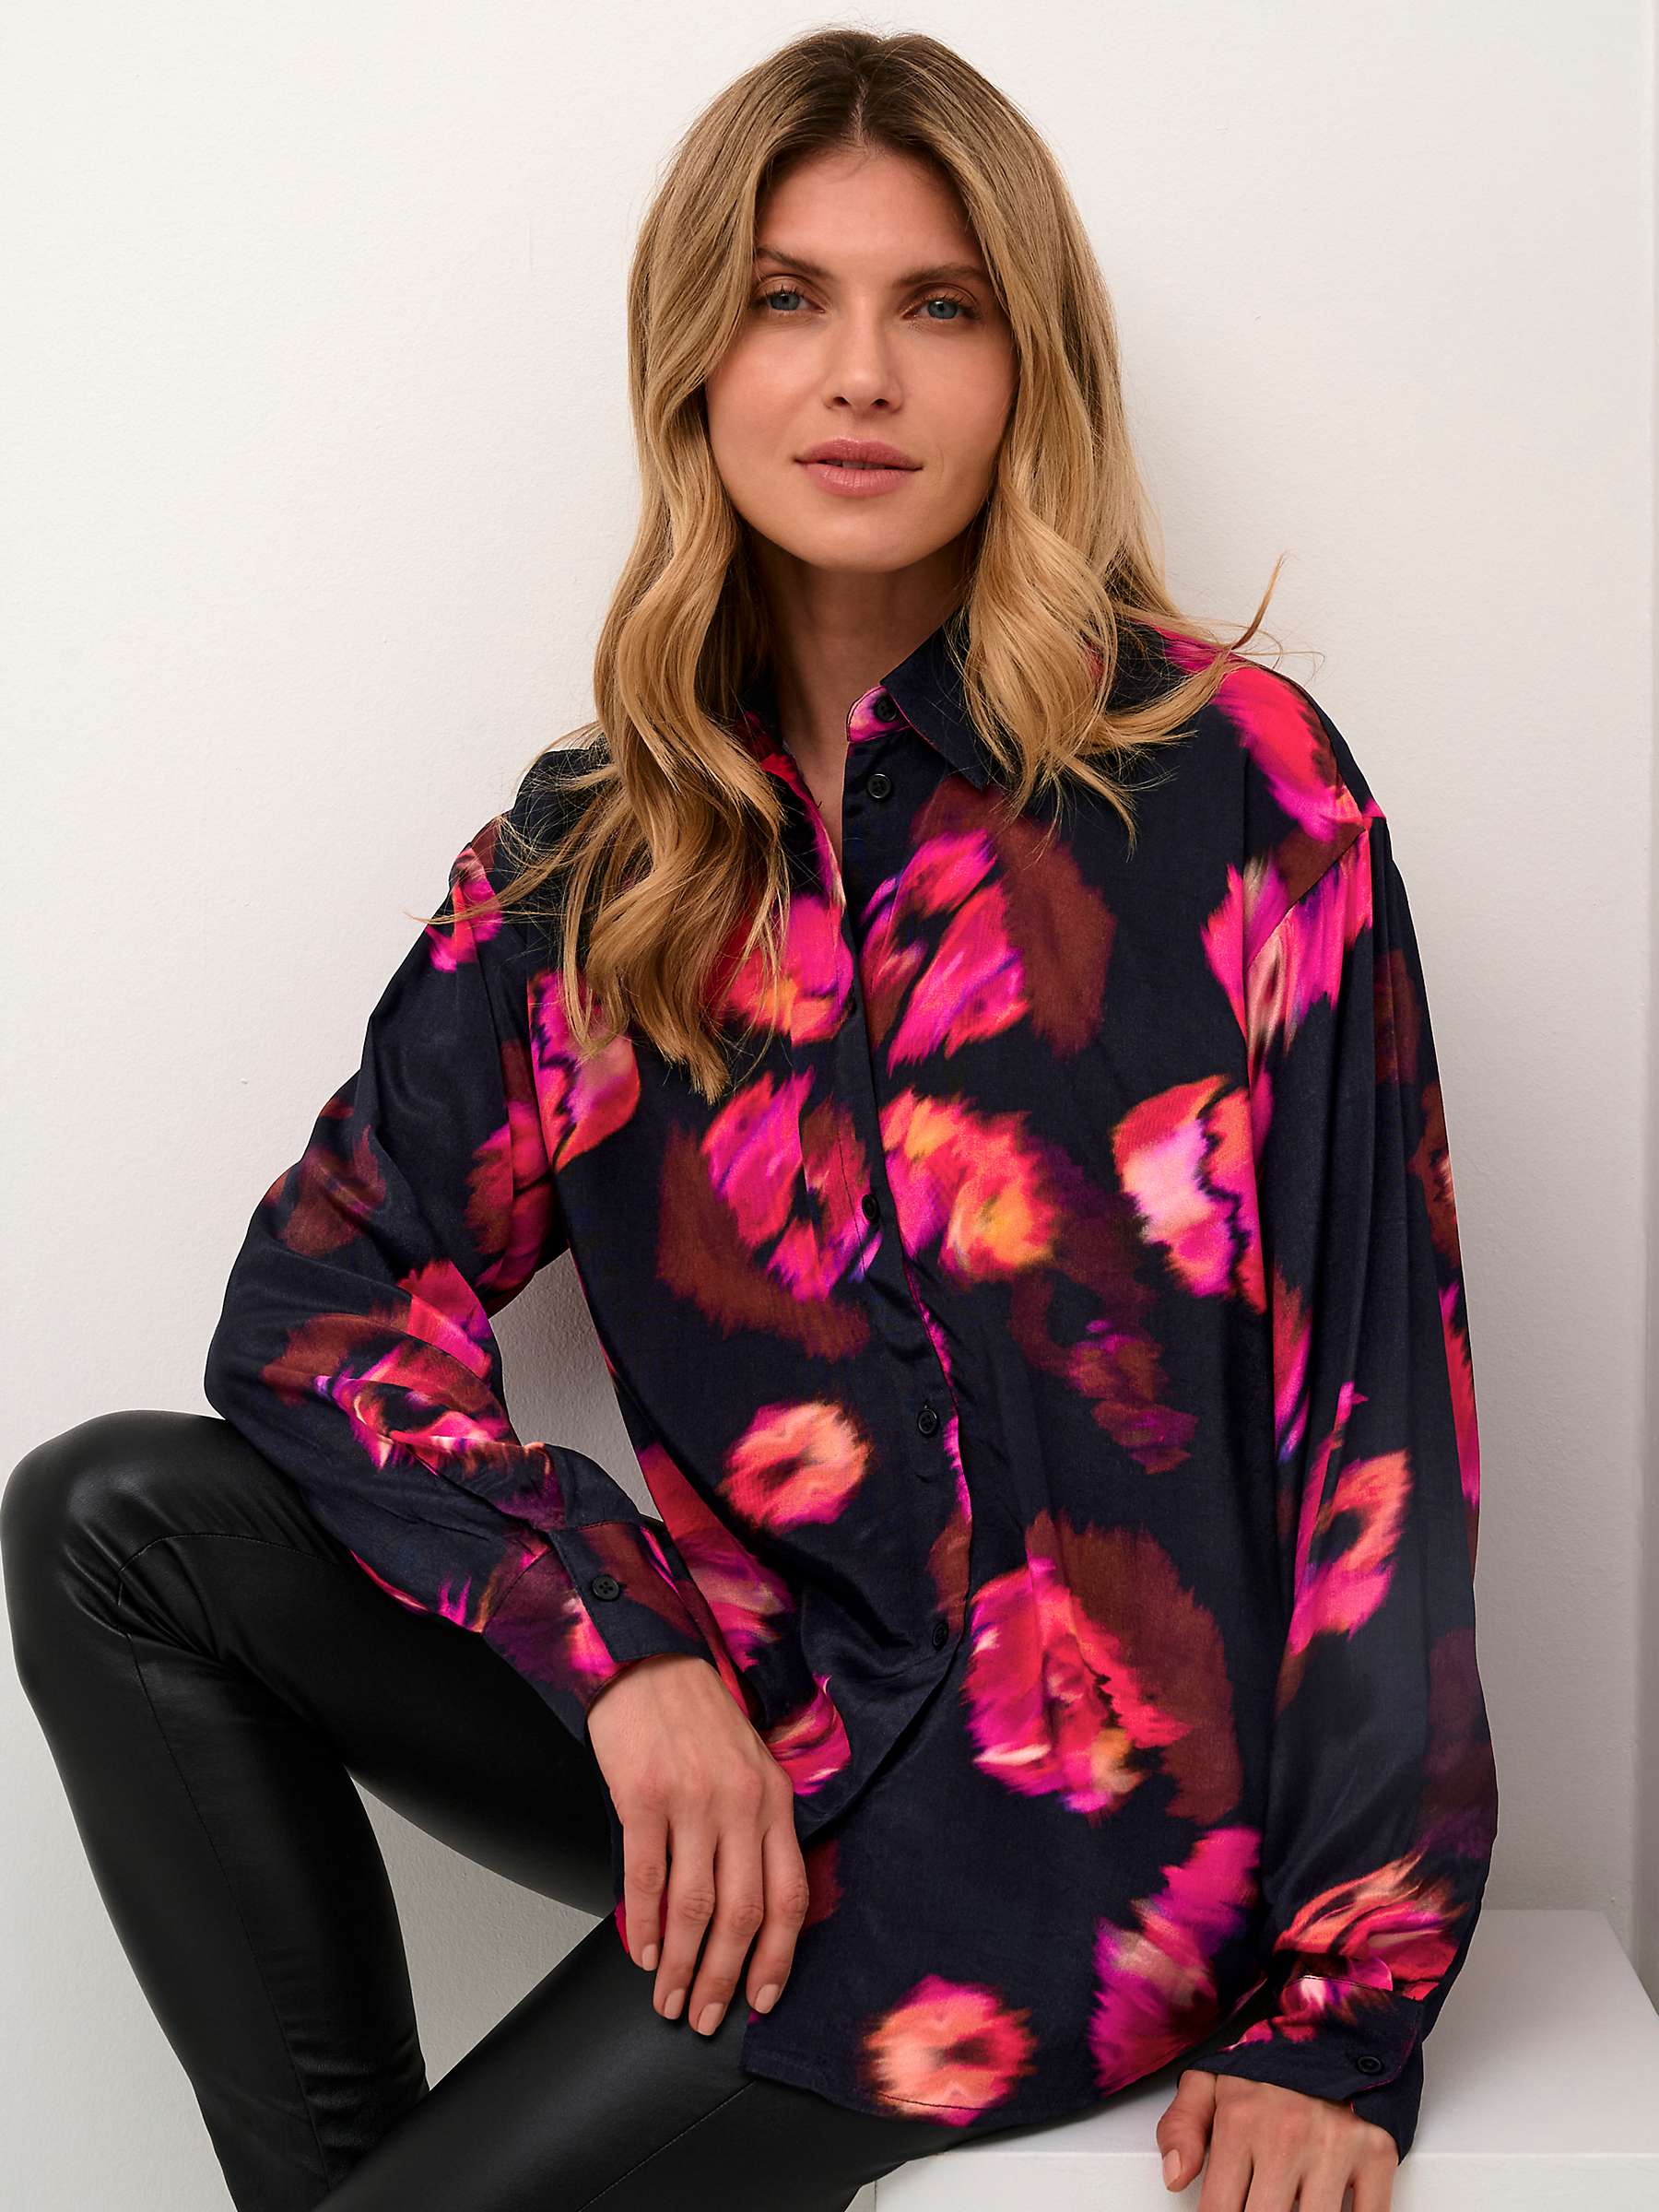 Buy KAFFE Louisa Sundried Flower Shirt, Black/Multi Online at johnlewis.com